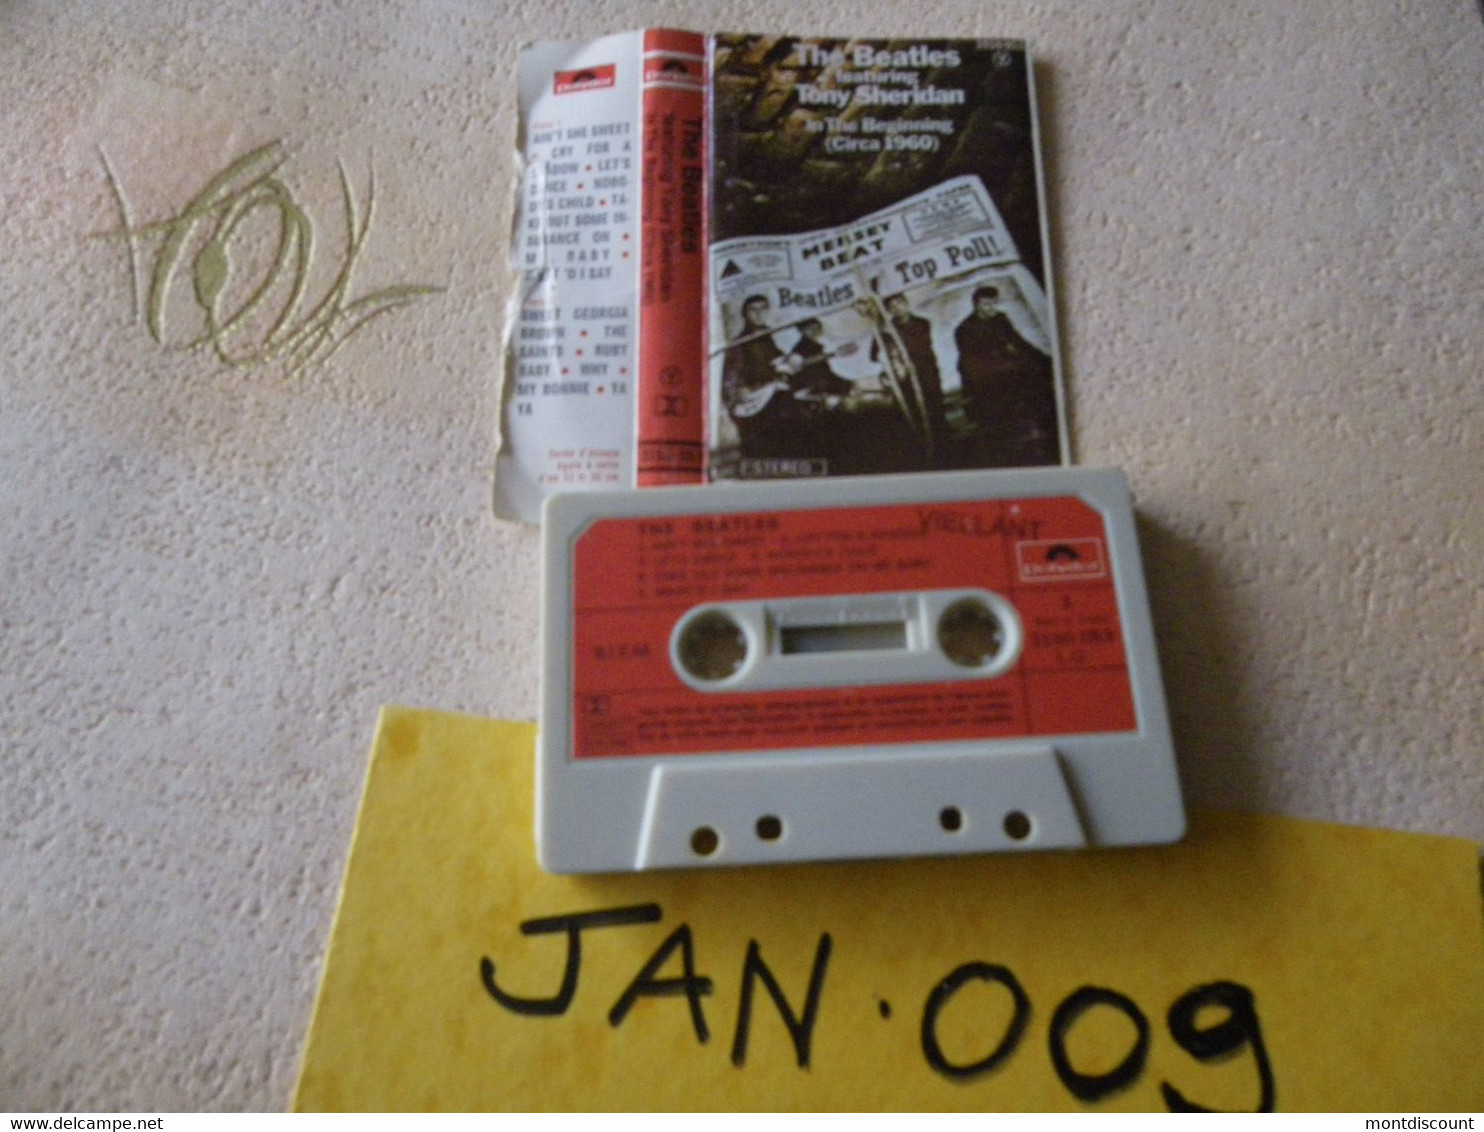 THE BEATLES K7 AUDIO VOIR PHOTO...ET REGARDEZ LES AUTRES (PLUSIEURS) (JAN 009) - Cassettes Audio